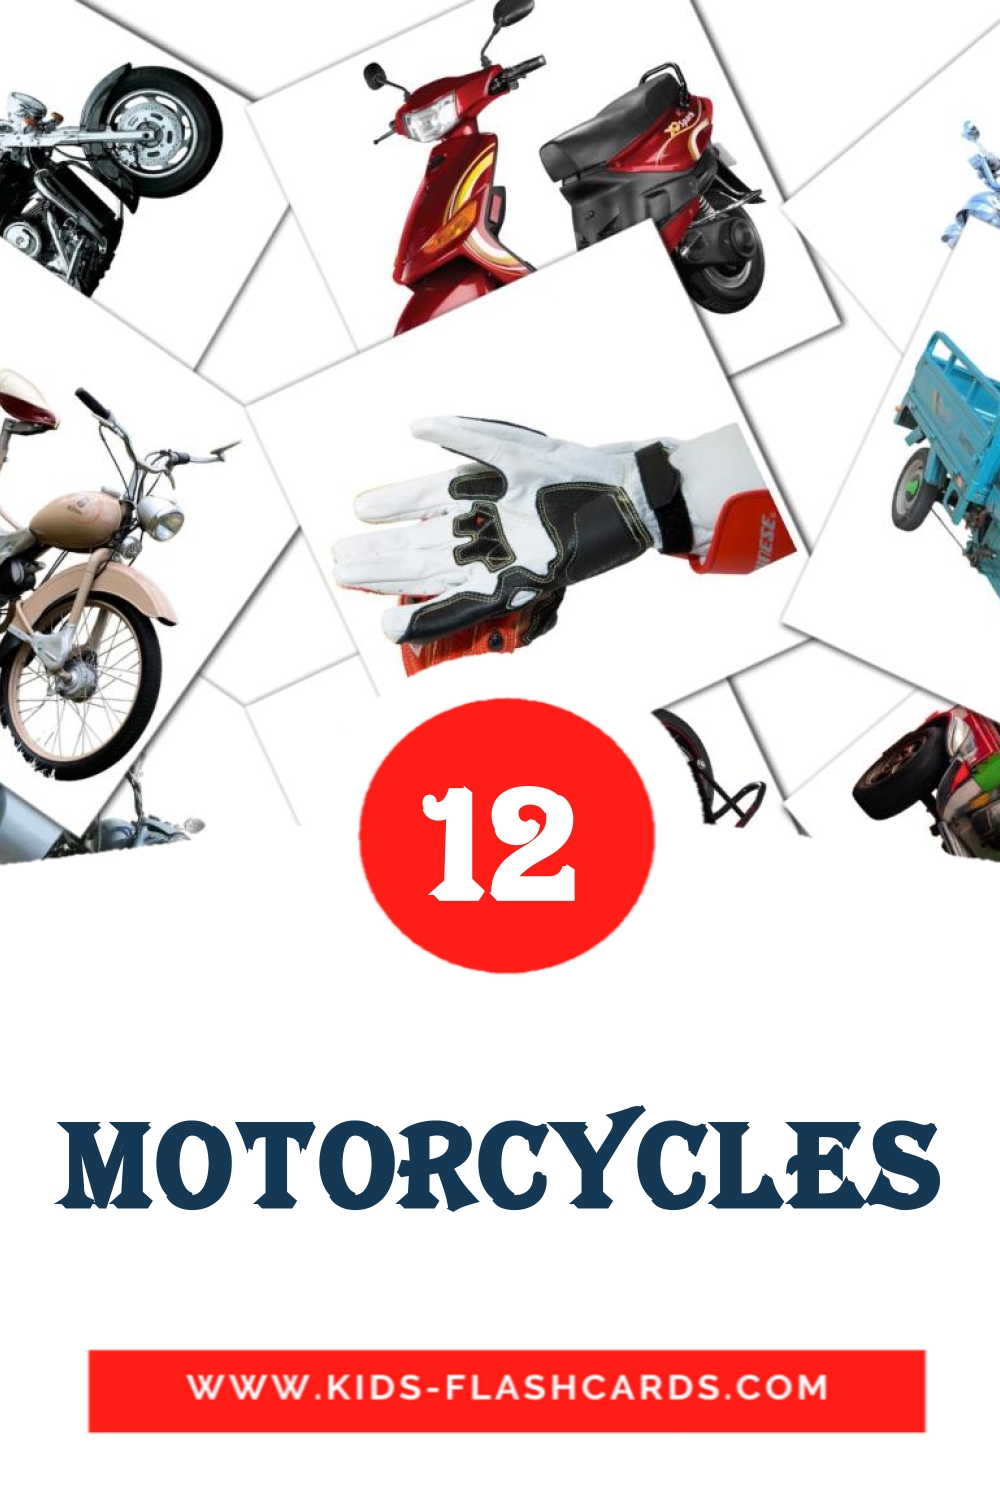 Motorcycles на албанском для Детского Сада (12 карточек)